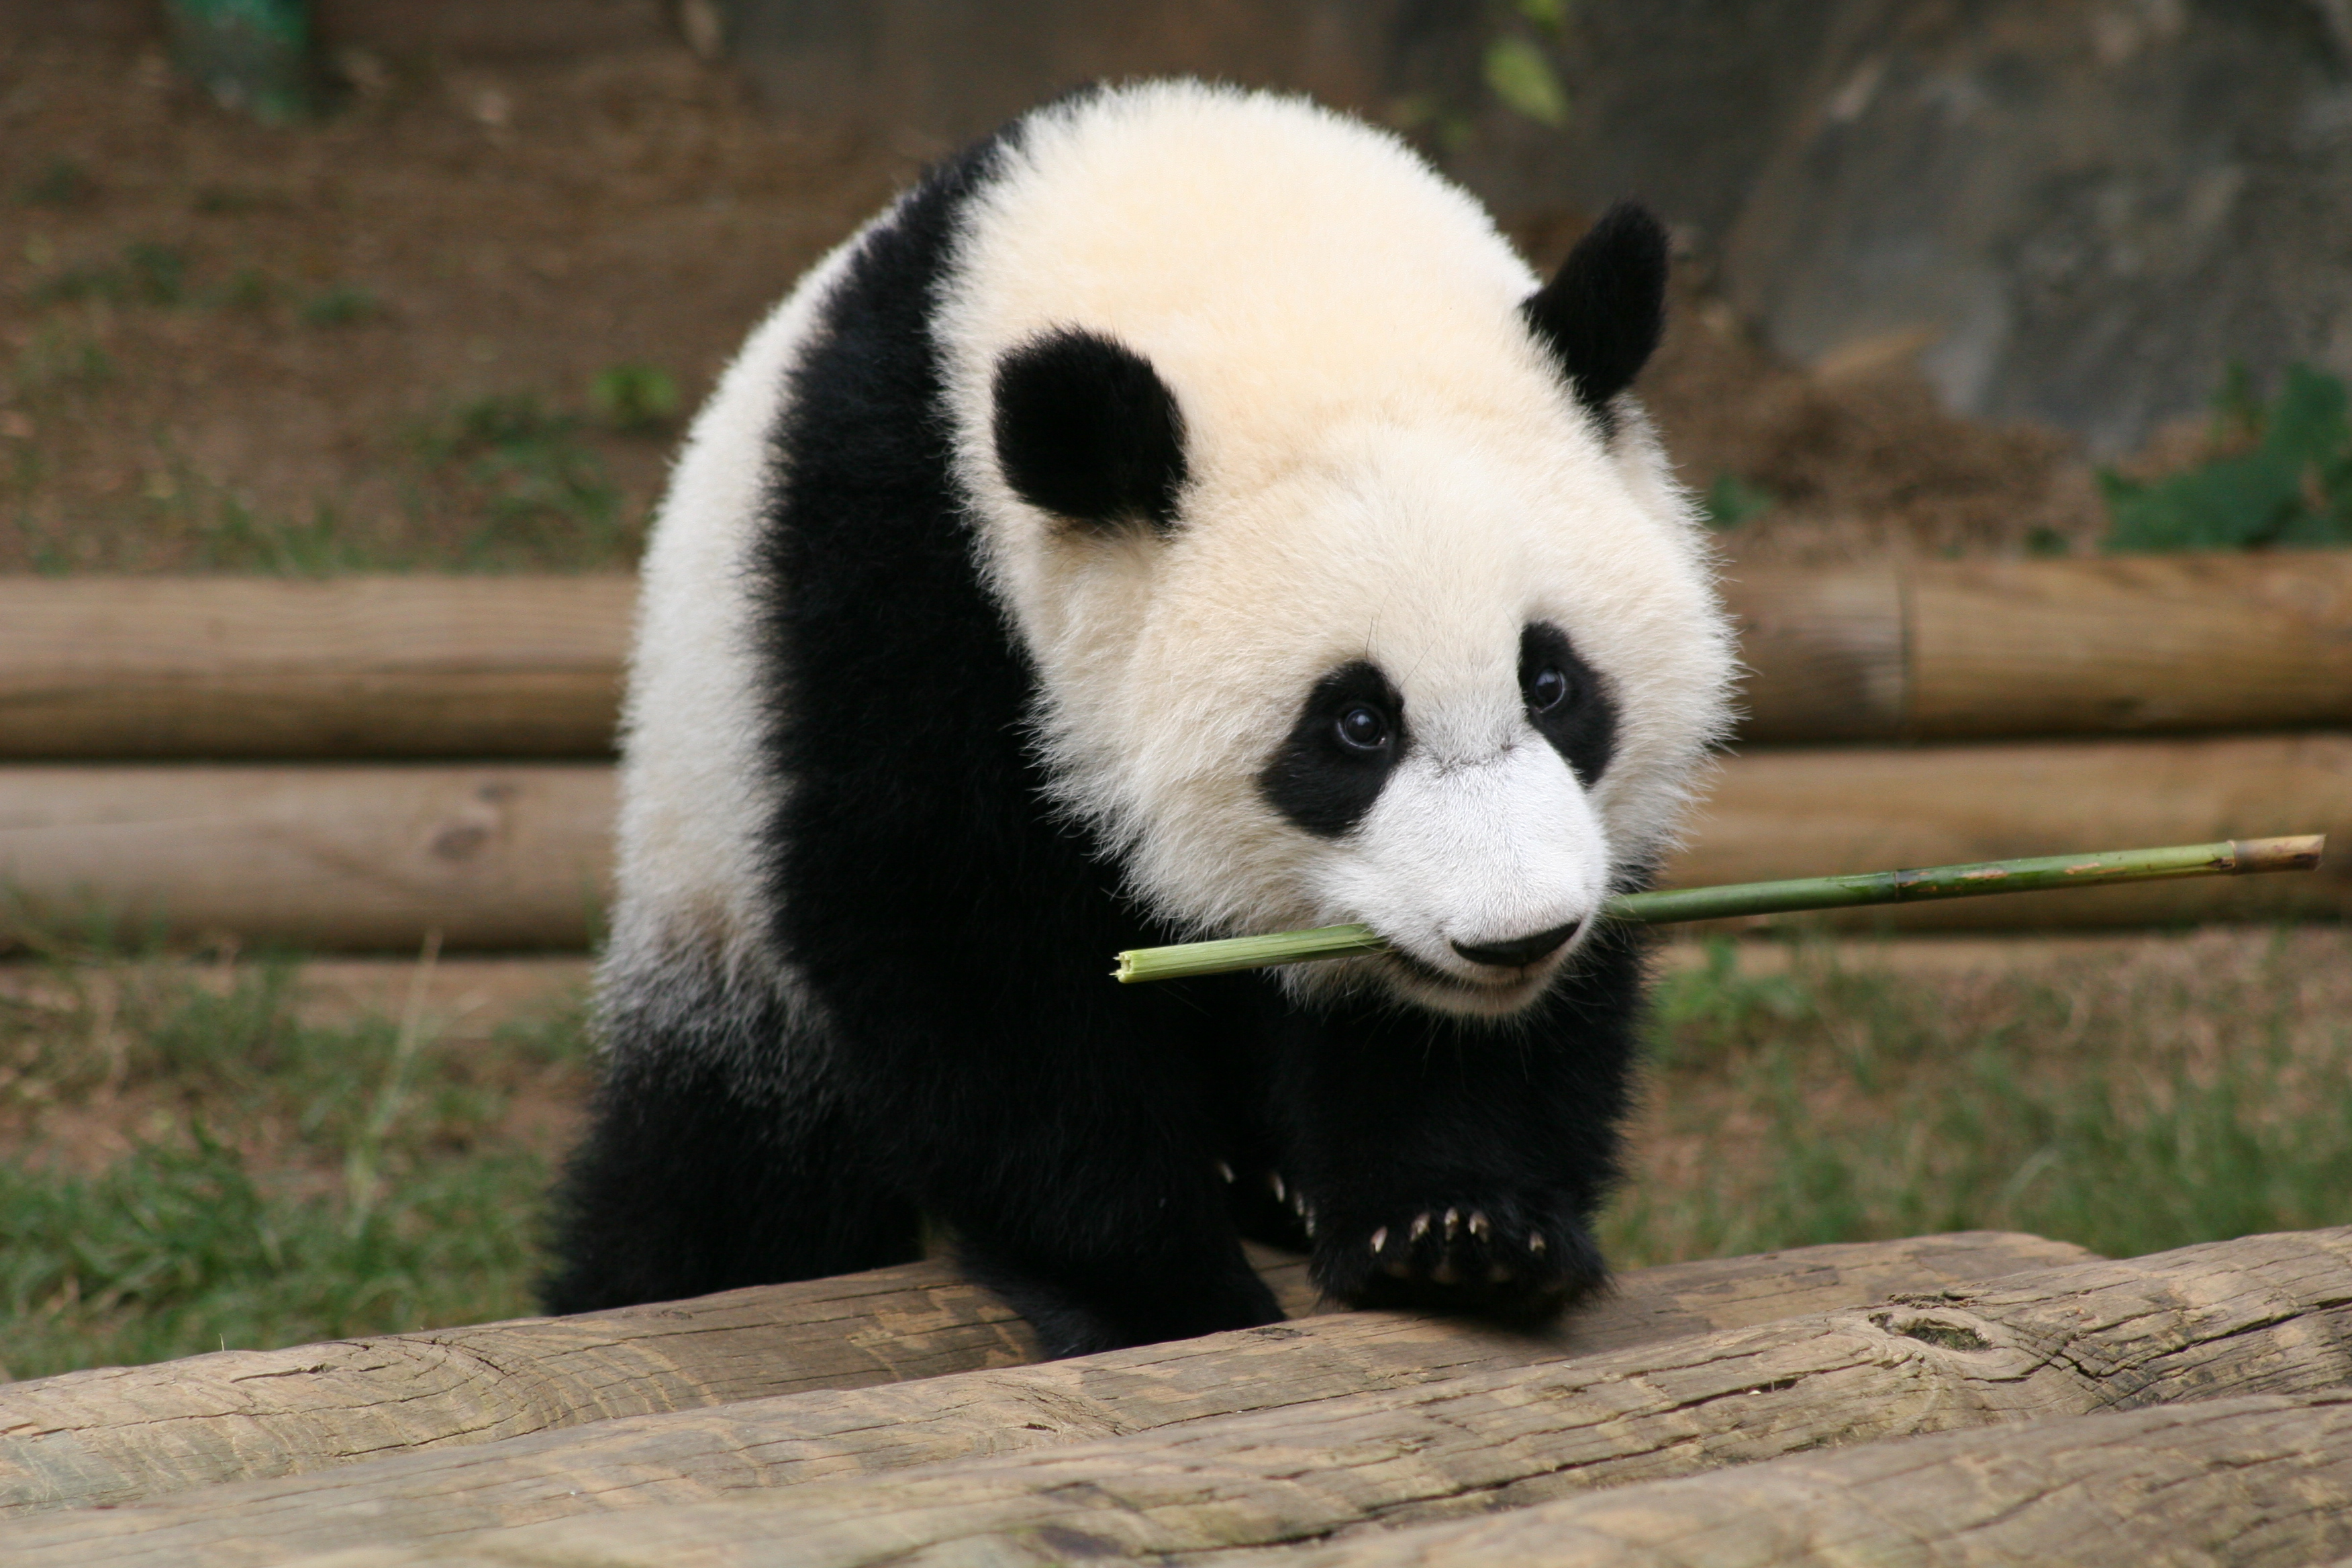 panda petting zoo united states